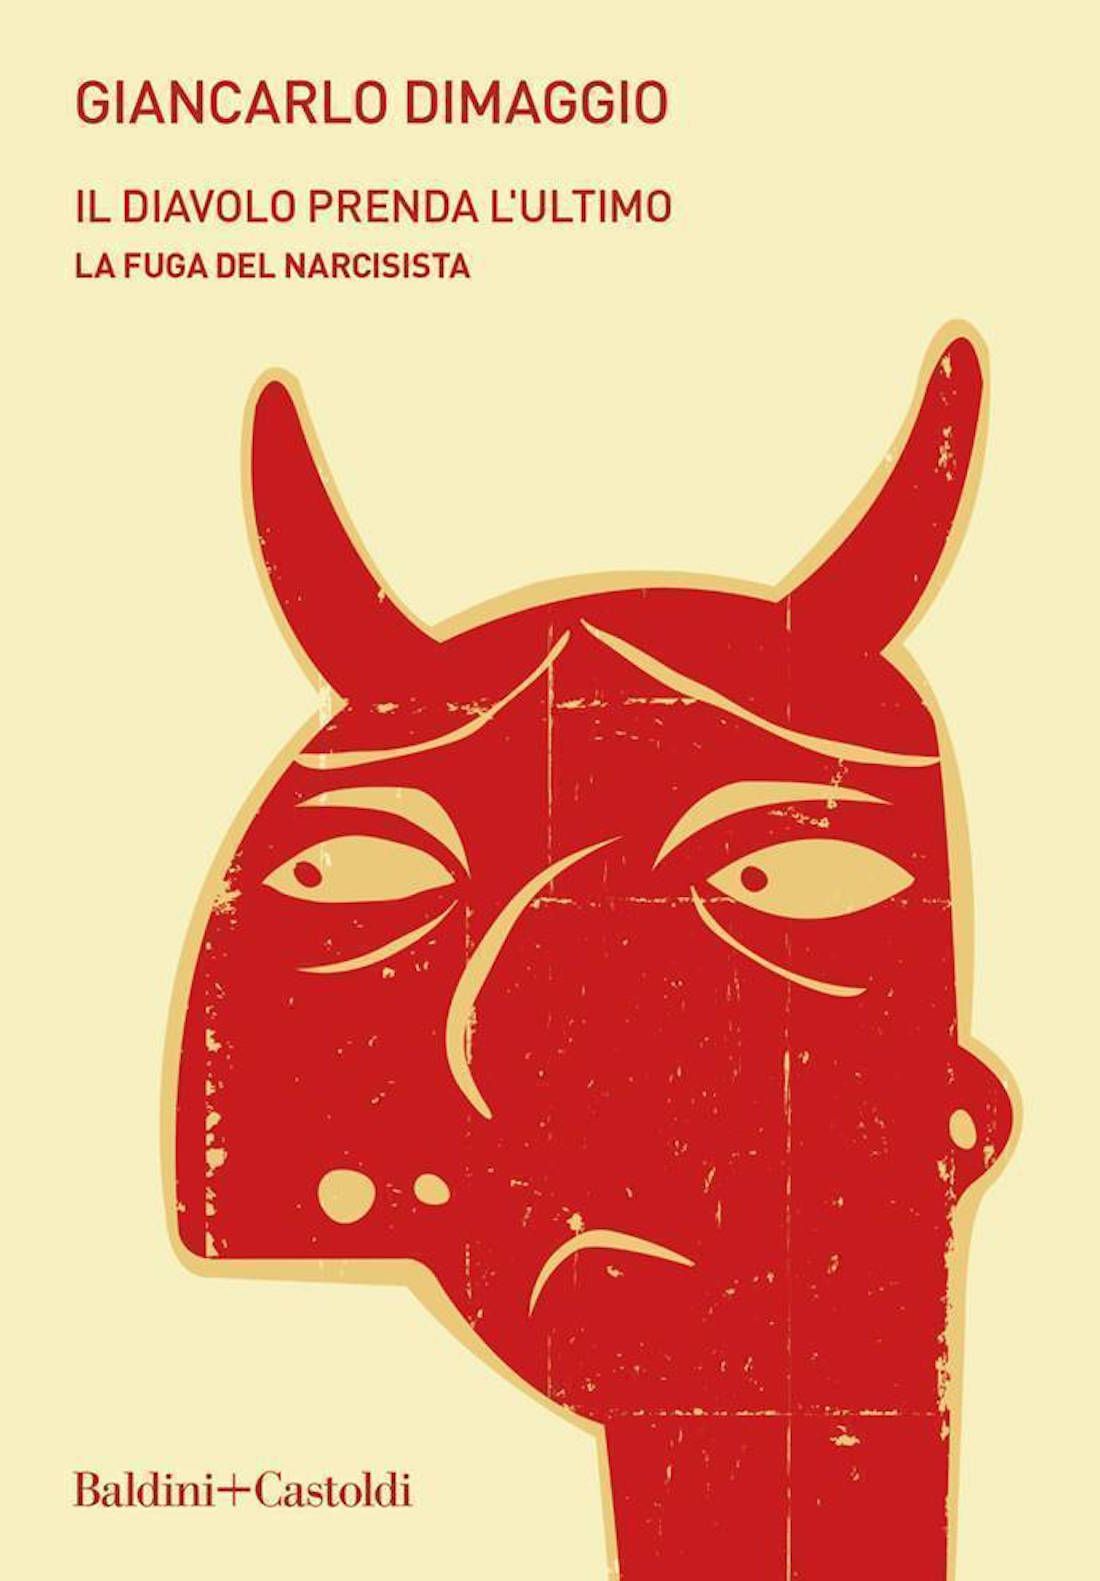 Il diavolo prenda l’ultimo: il nuovo libro di Giancarlo Dimaggio - immagine 1